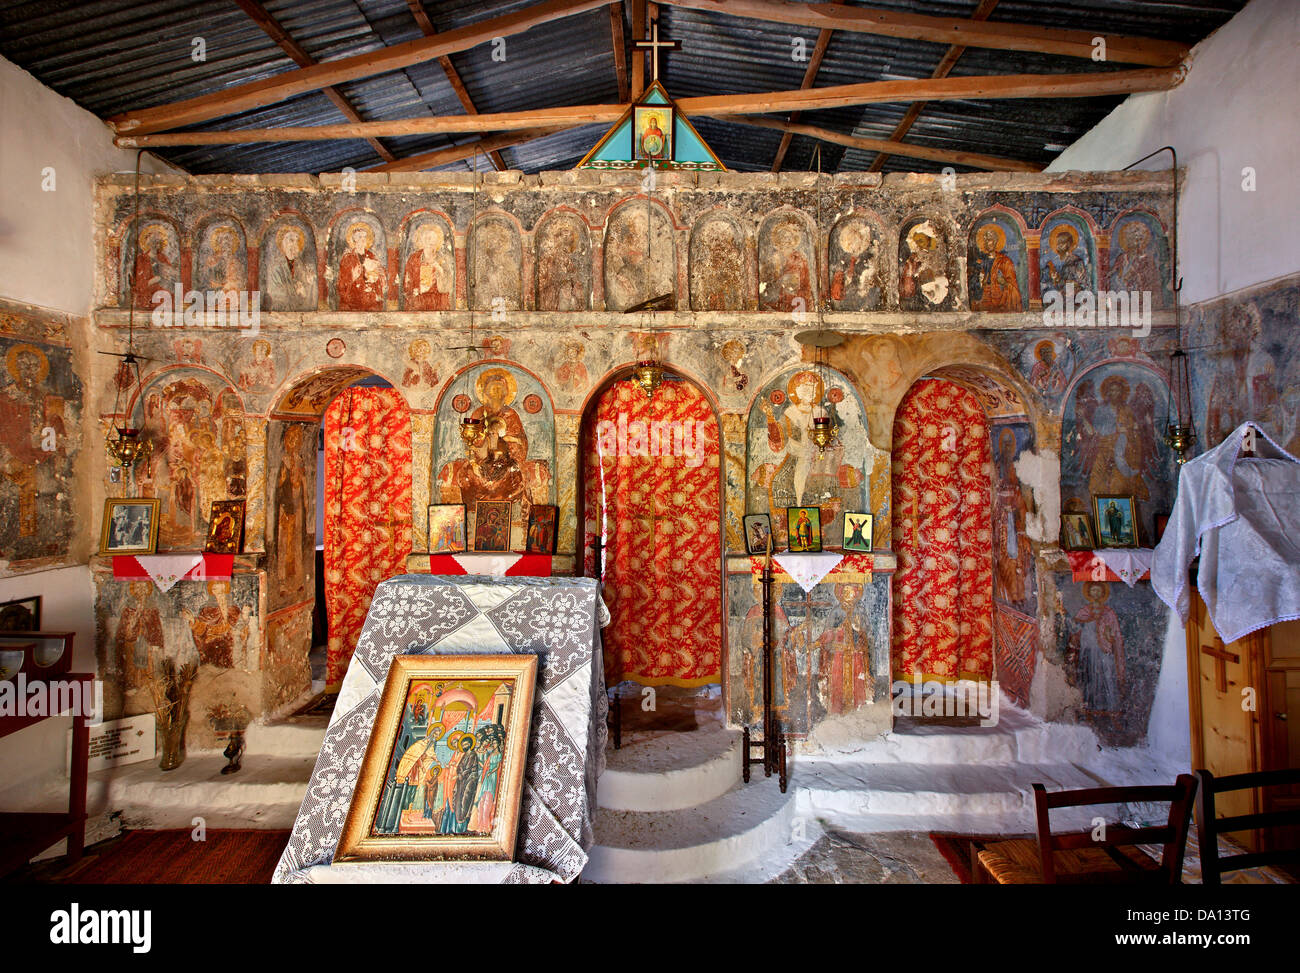 L'iconostase de l'église Panagia, Maroulatiki Perachori, Ithaca, île de la mer Ionienne, l'Eptanisa (même "îles"), Grèce Banque D'Images